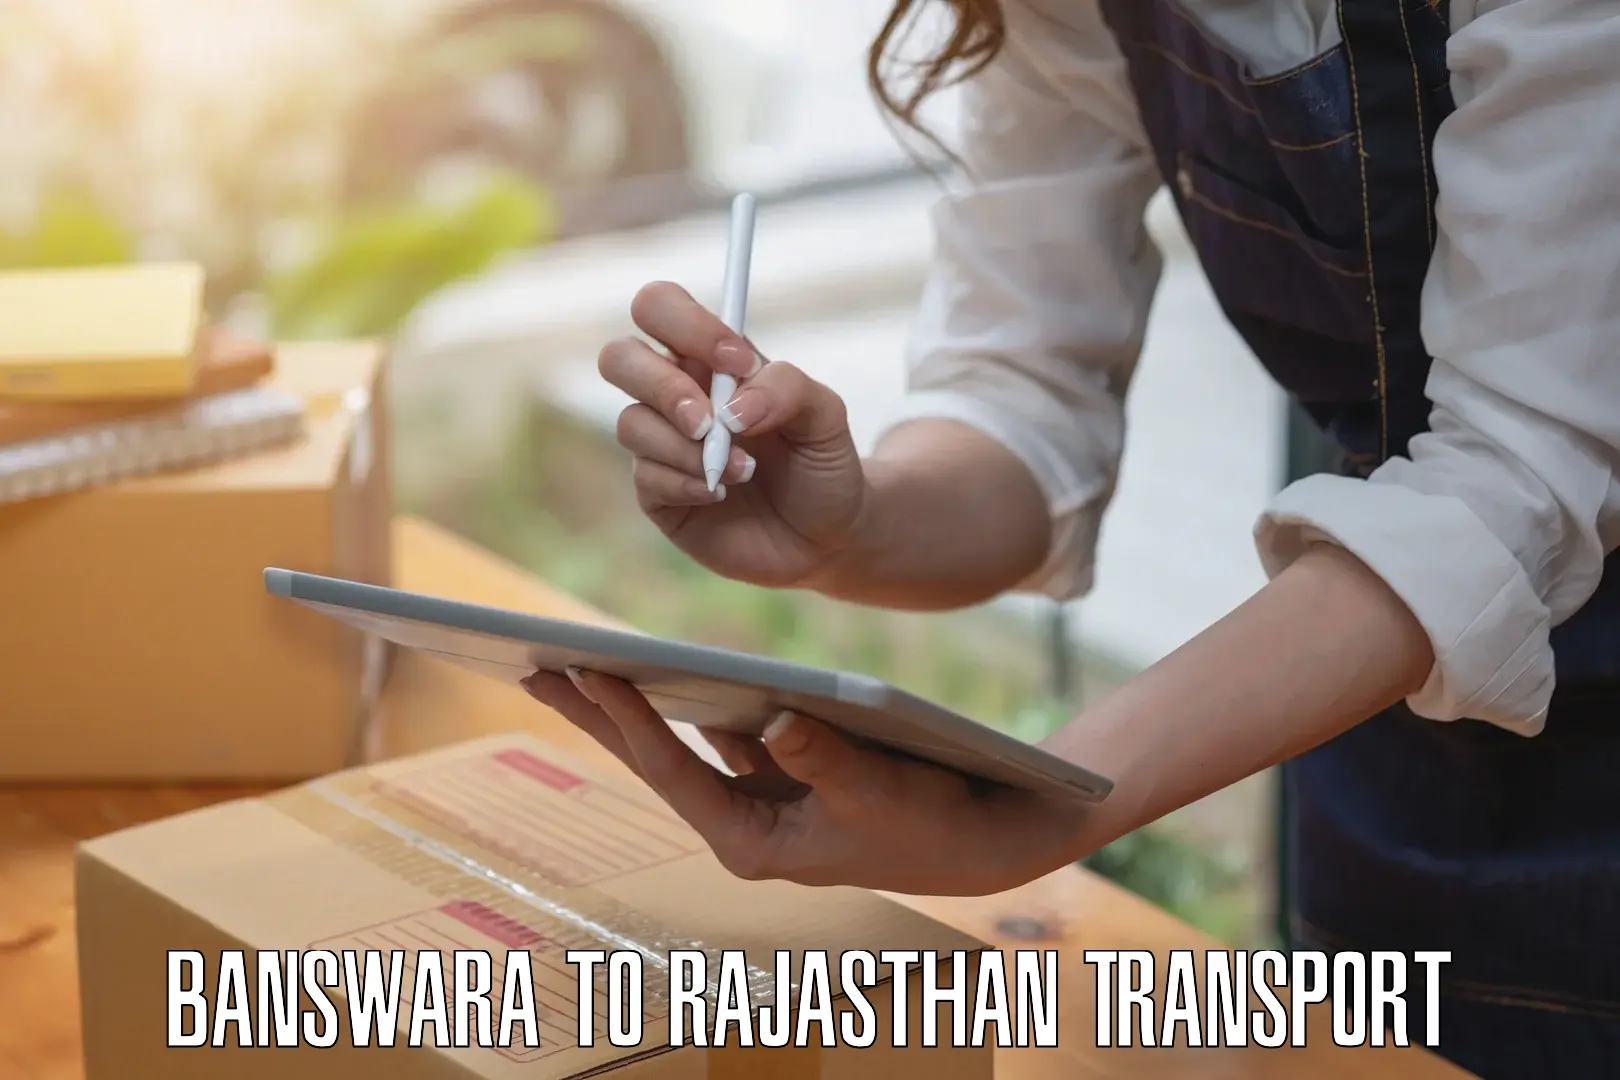 Nearby transport service Banswara to IIIT Kota